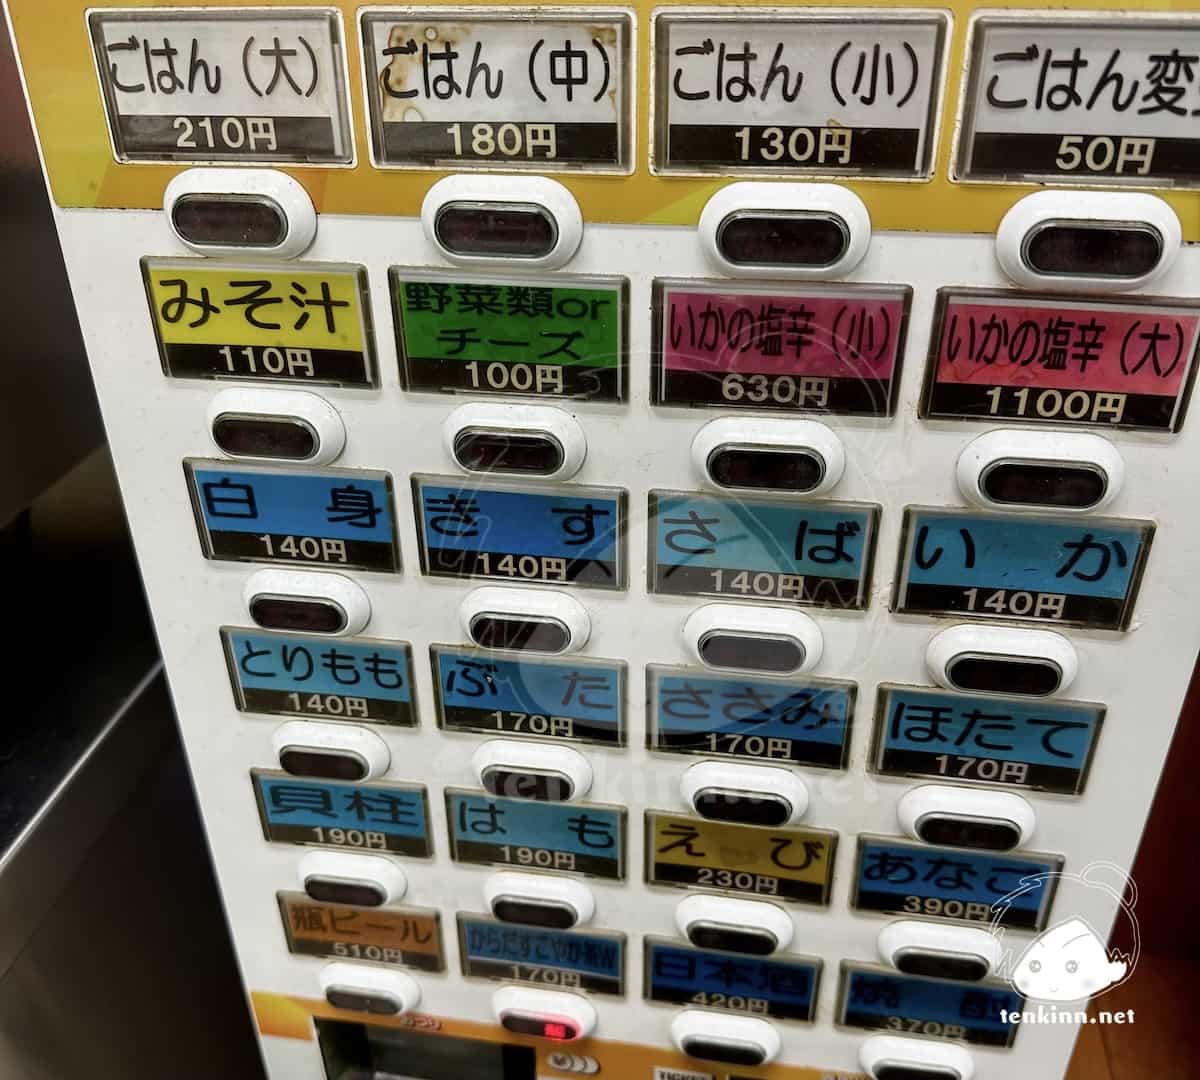 福岡の天ぷら「ひらお」店内でも追加購入できる券売機がある